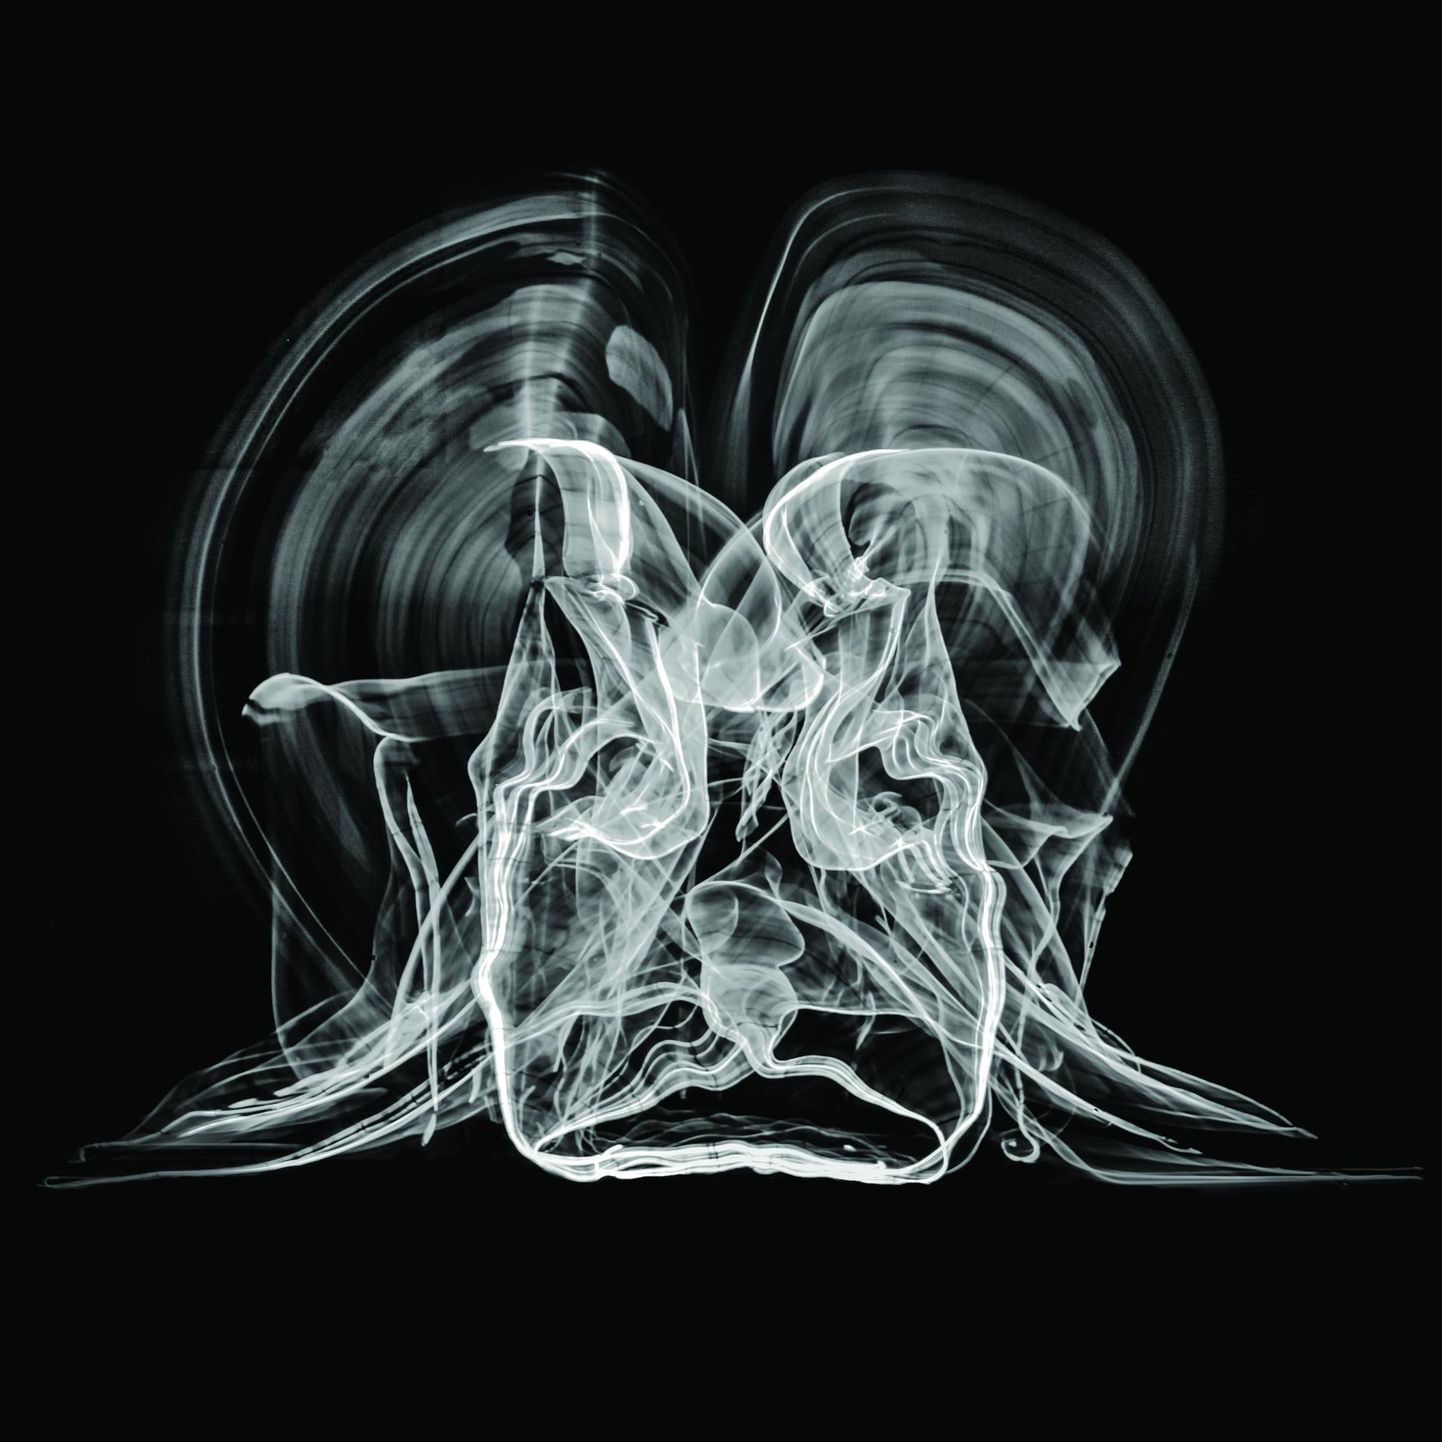 Üks näitusel tagurpidi eksponeeritavatest töödest on Arthur Grau foto «Kinetic Umbra», millel autor on pika säriajaga talletanud inimkeha liikumist täielikus pimeduses.